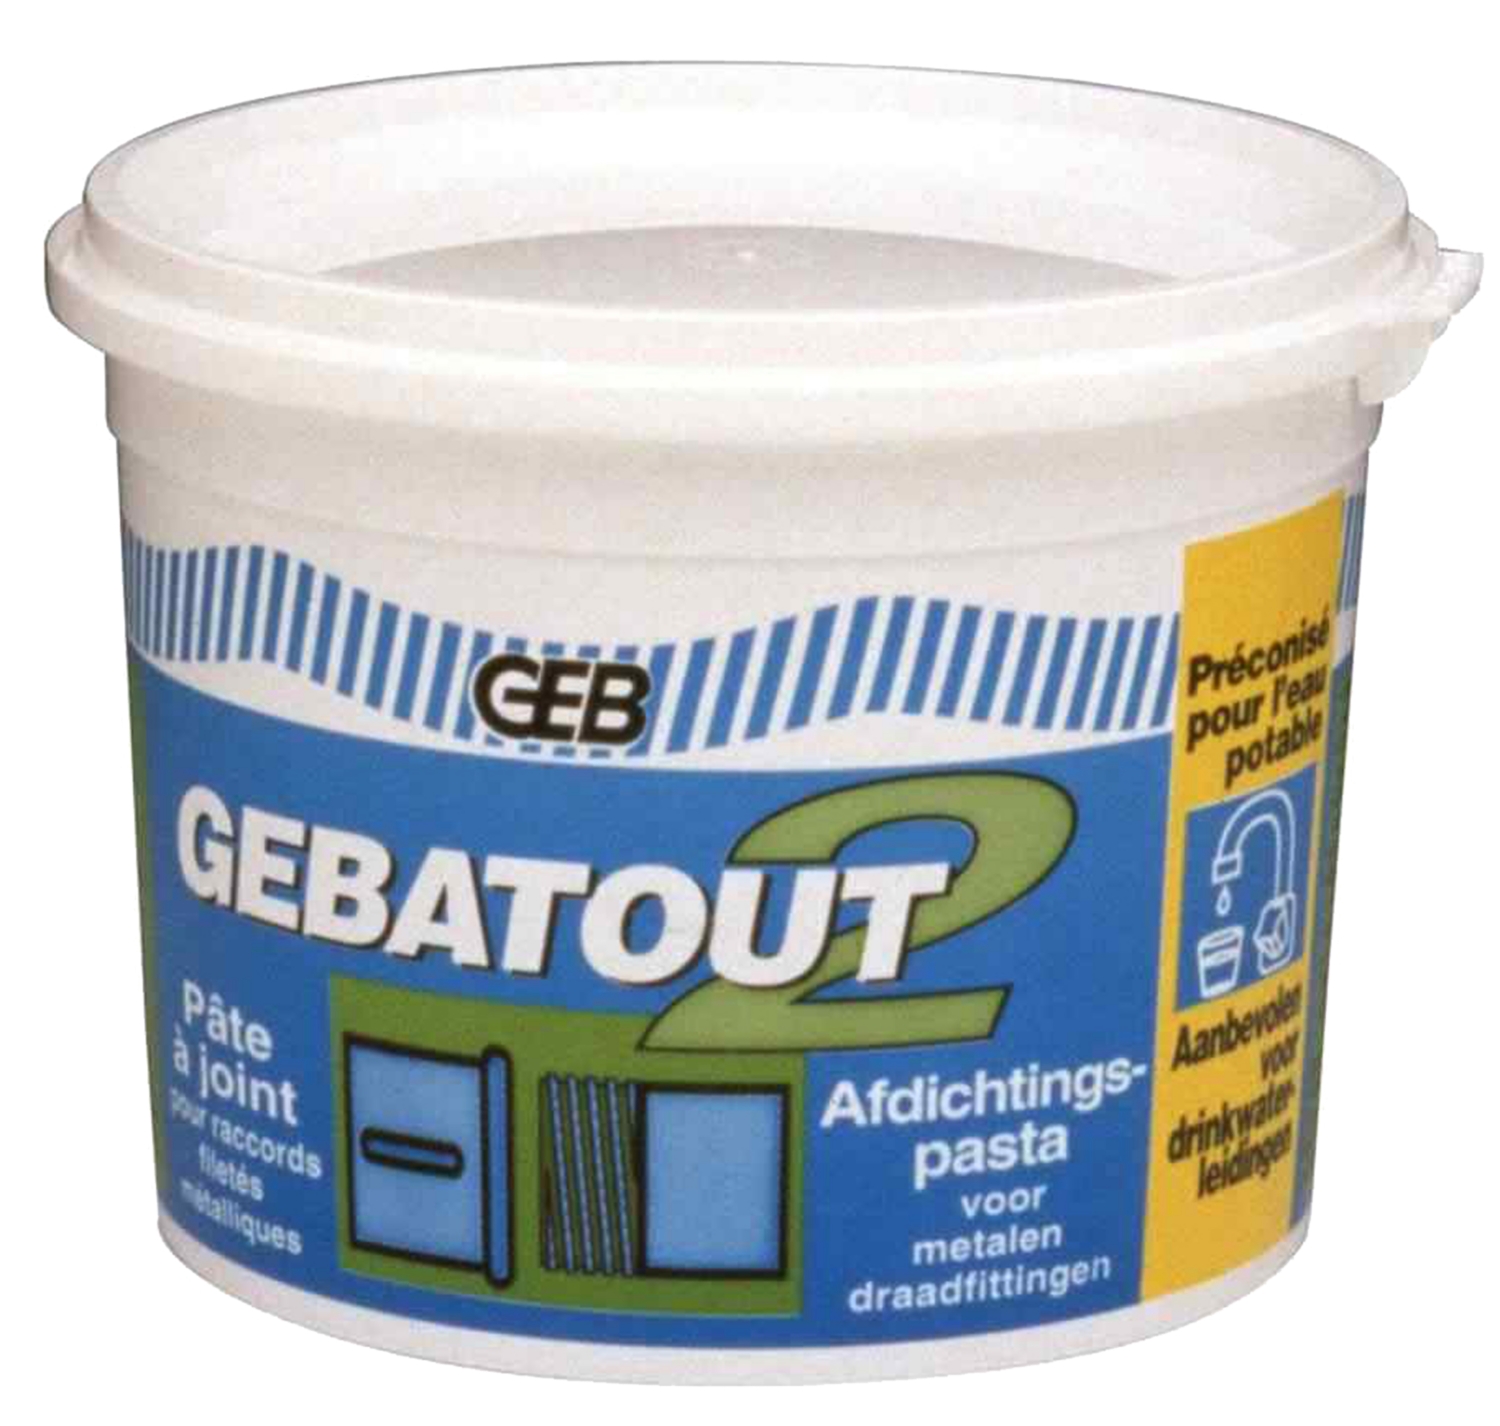 Pâte à joint Gebatout 2 GEB